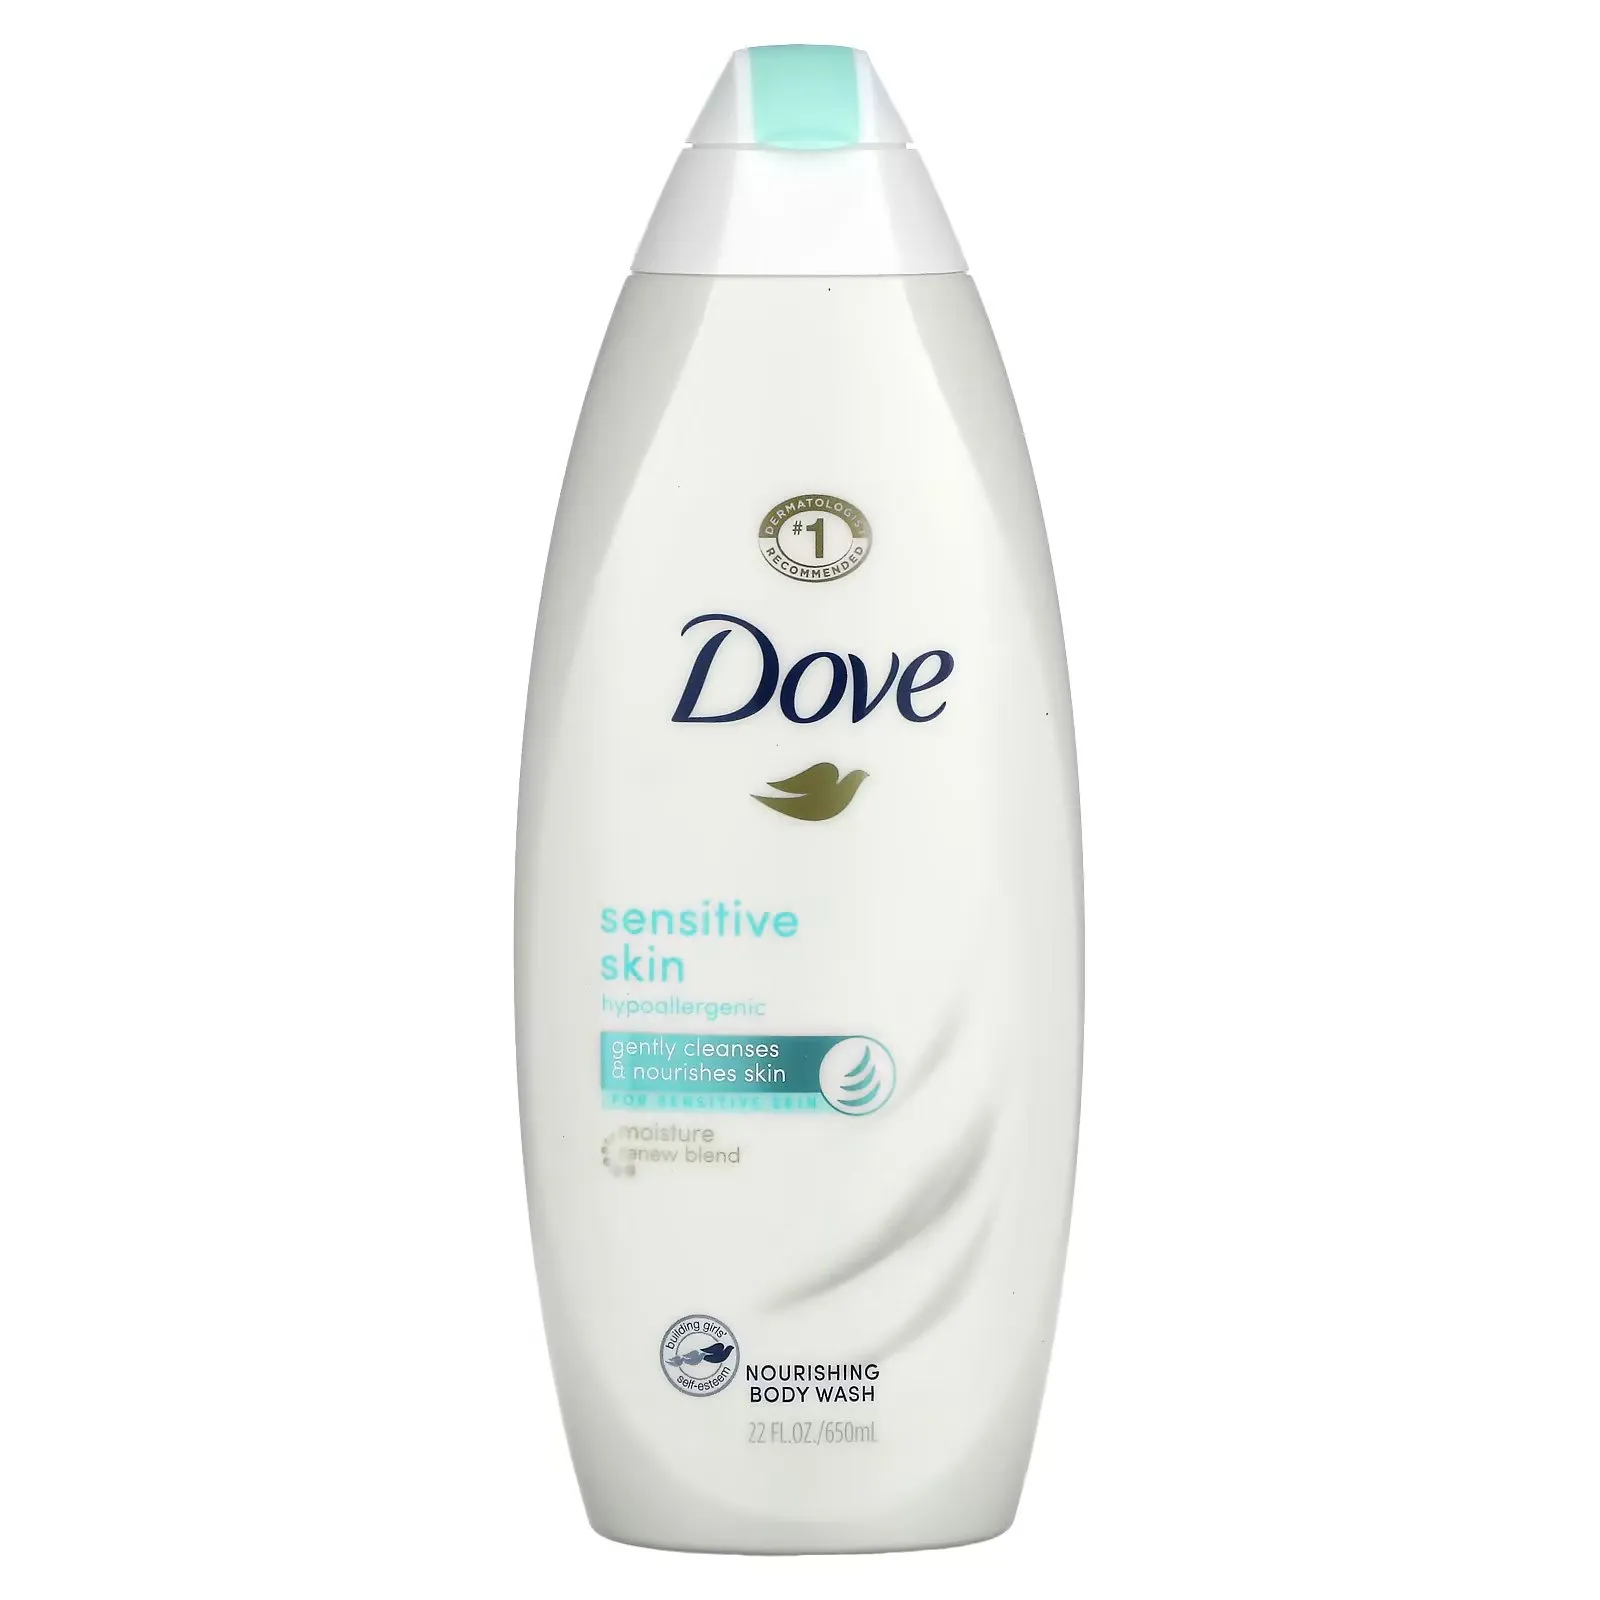 FEMMENORDIC's choice in the Olay vs Dove body wash comparison, the Dove Sensitive Skin Body Wash